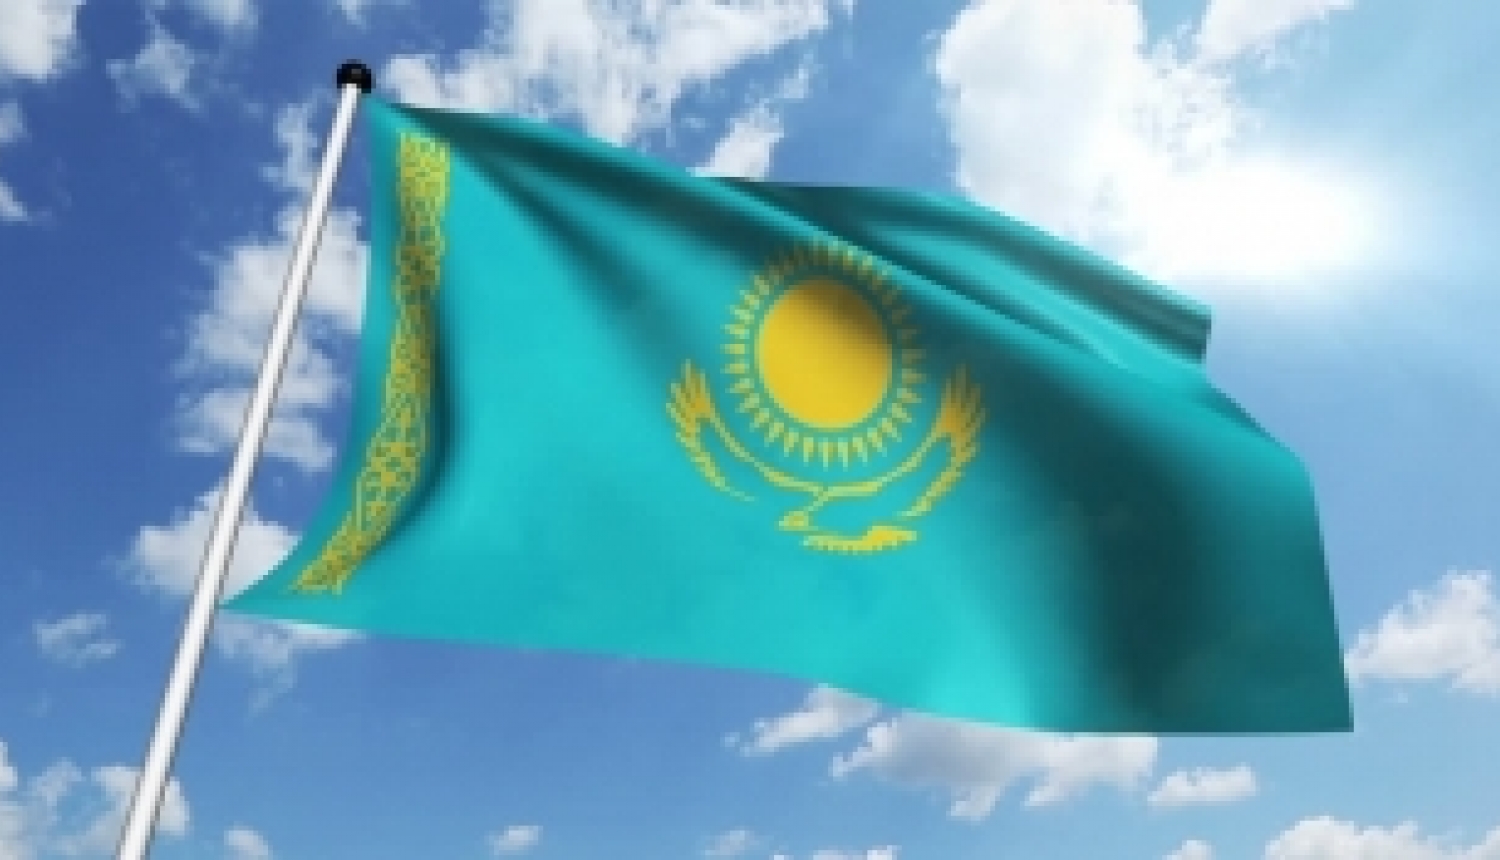 Iespēja pieteikties Kazahstānas valdības stipendijām